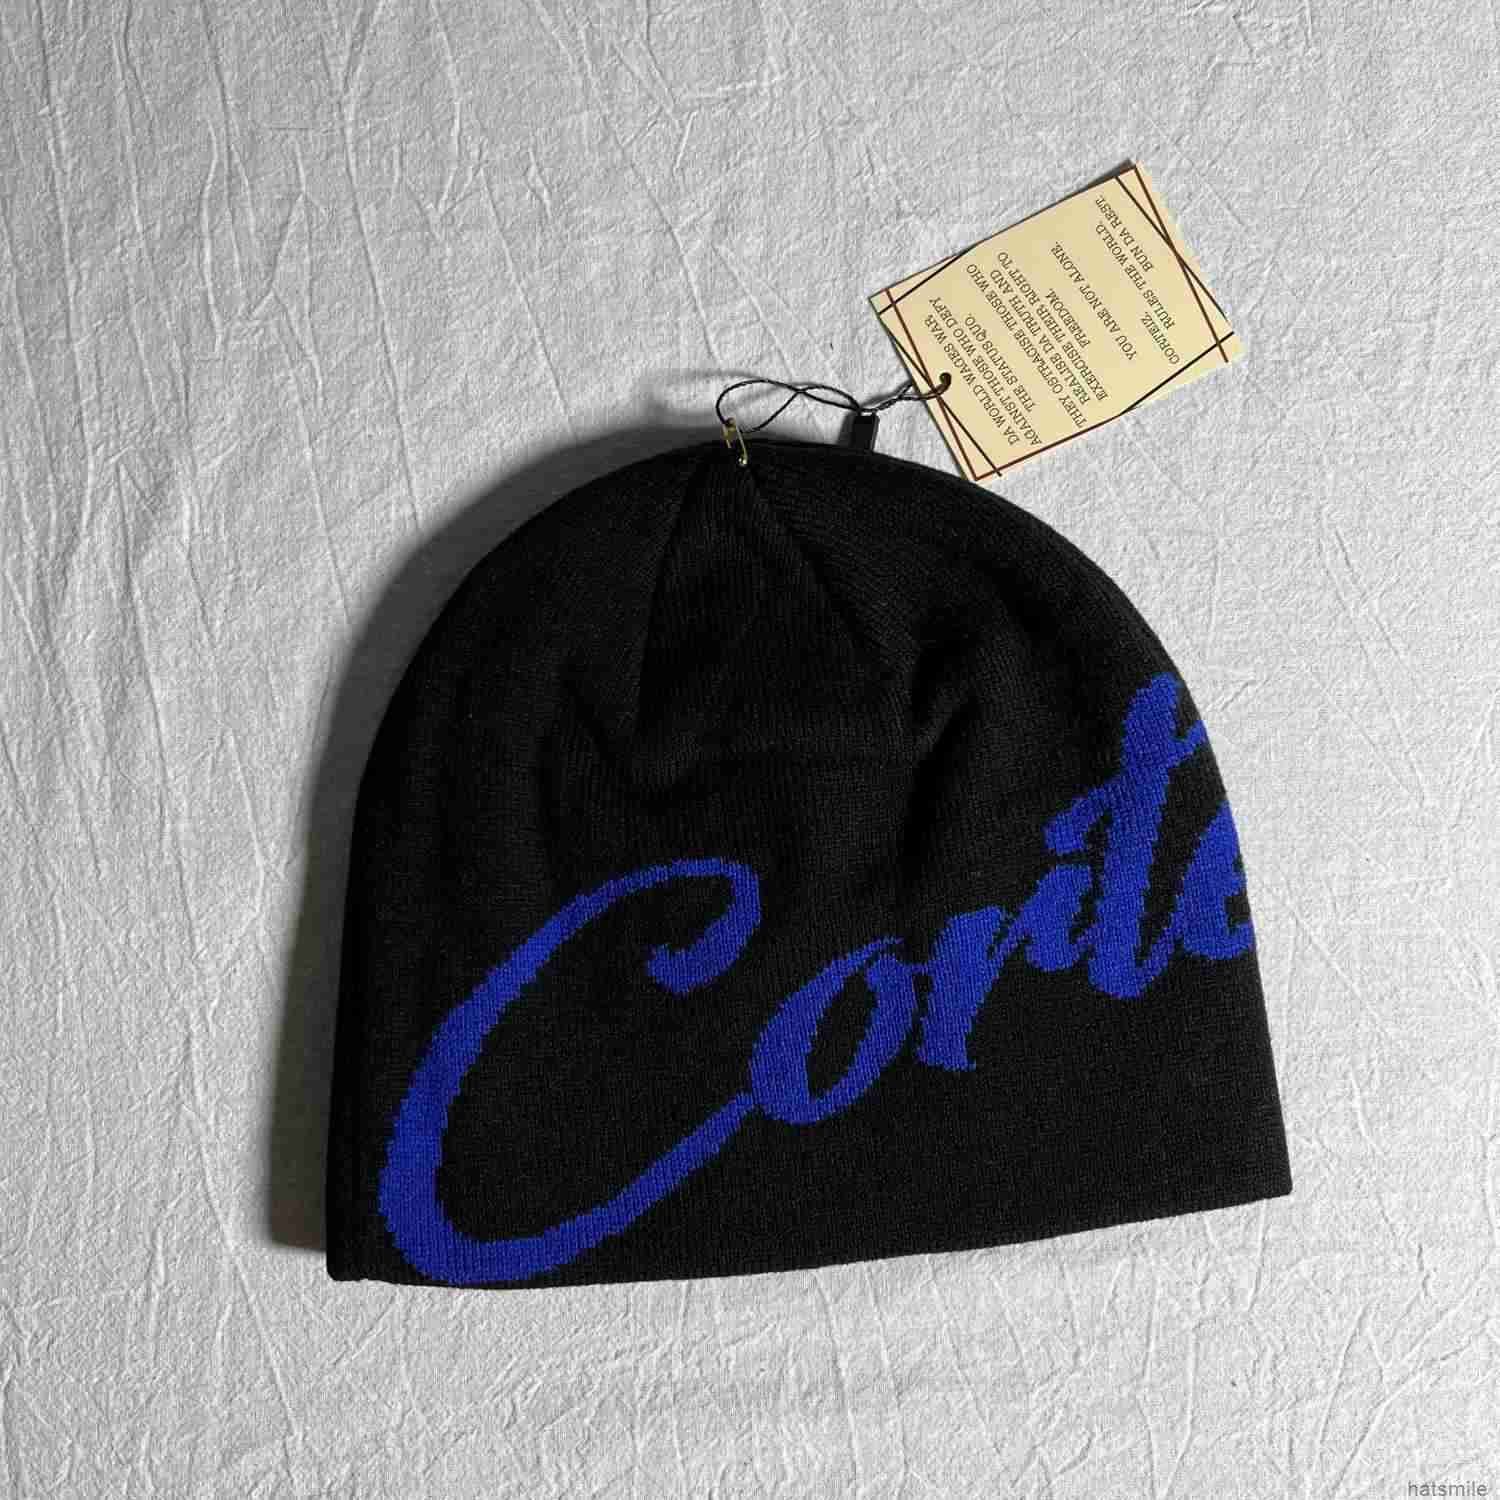 svart och blå co -teckensnitt kall hatt